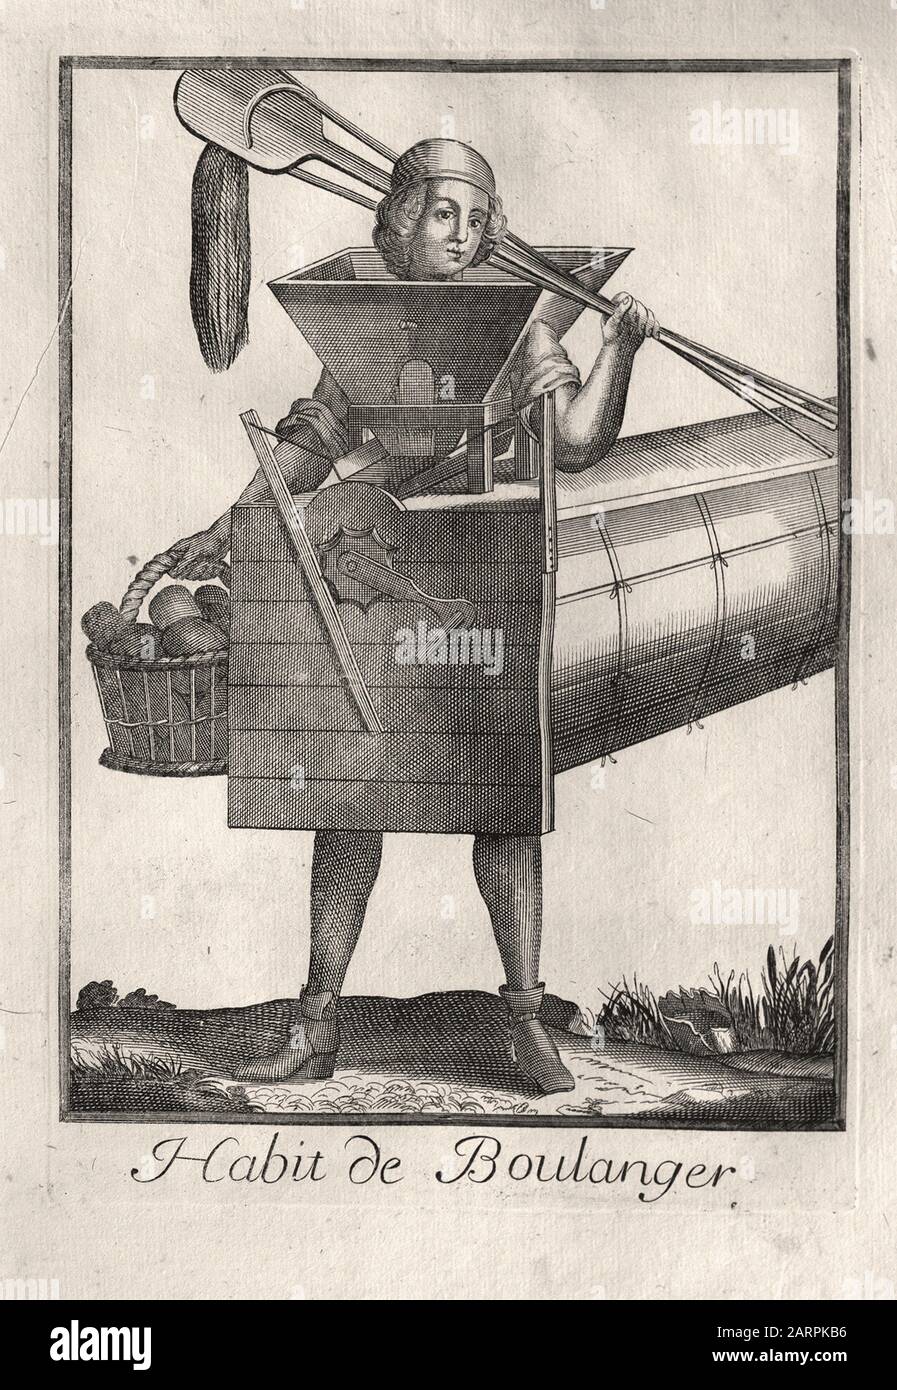 Robe du Baker - gravure française fin XVIIe siècle Banque D'Images